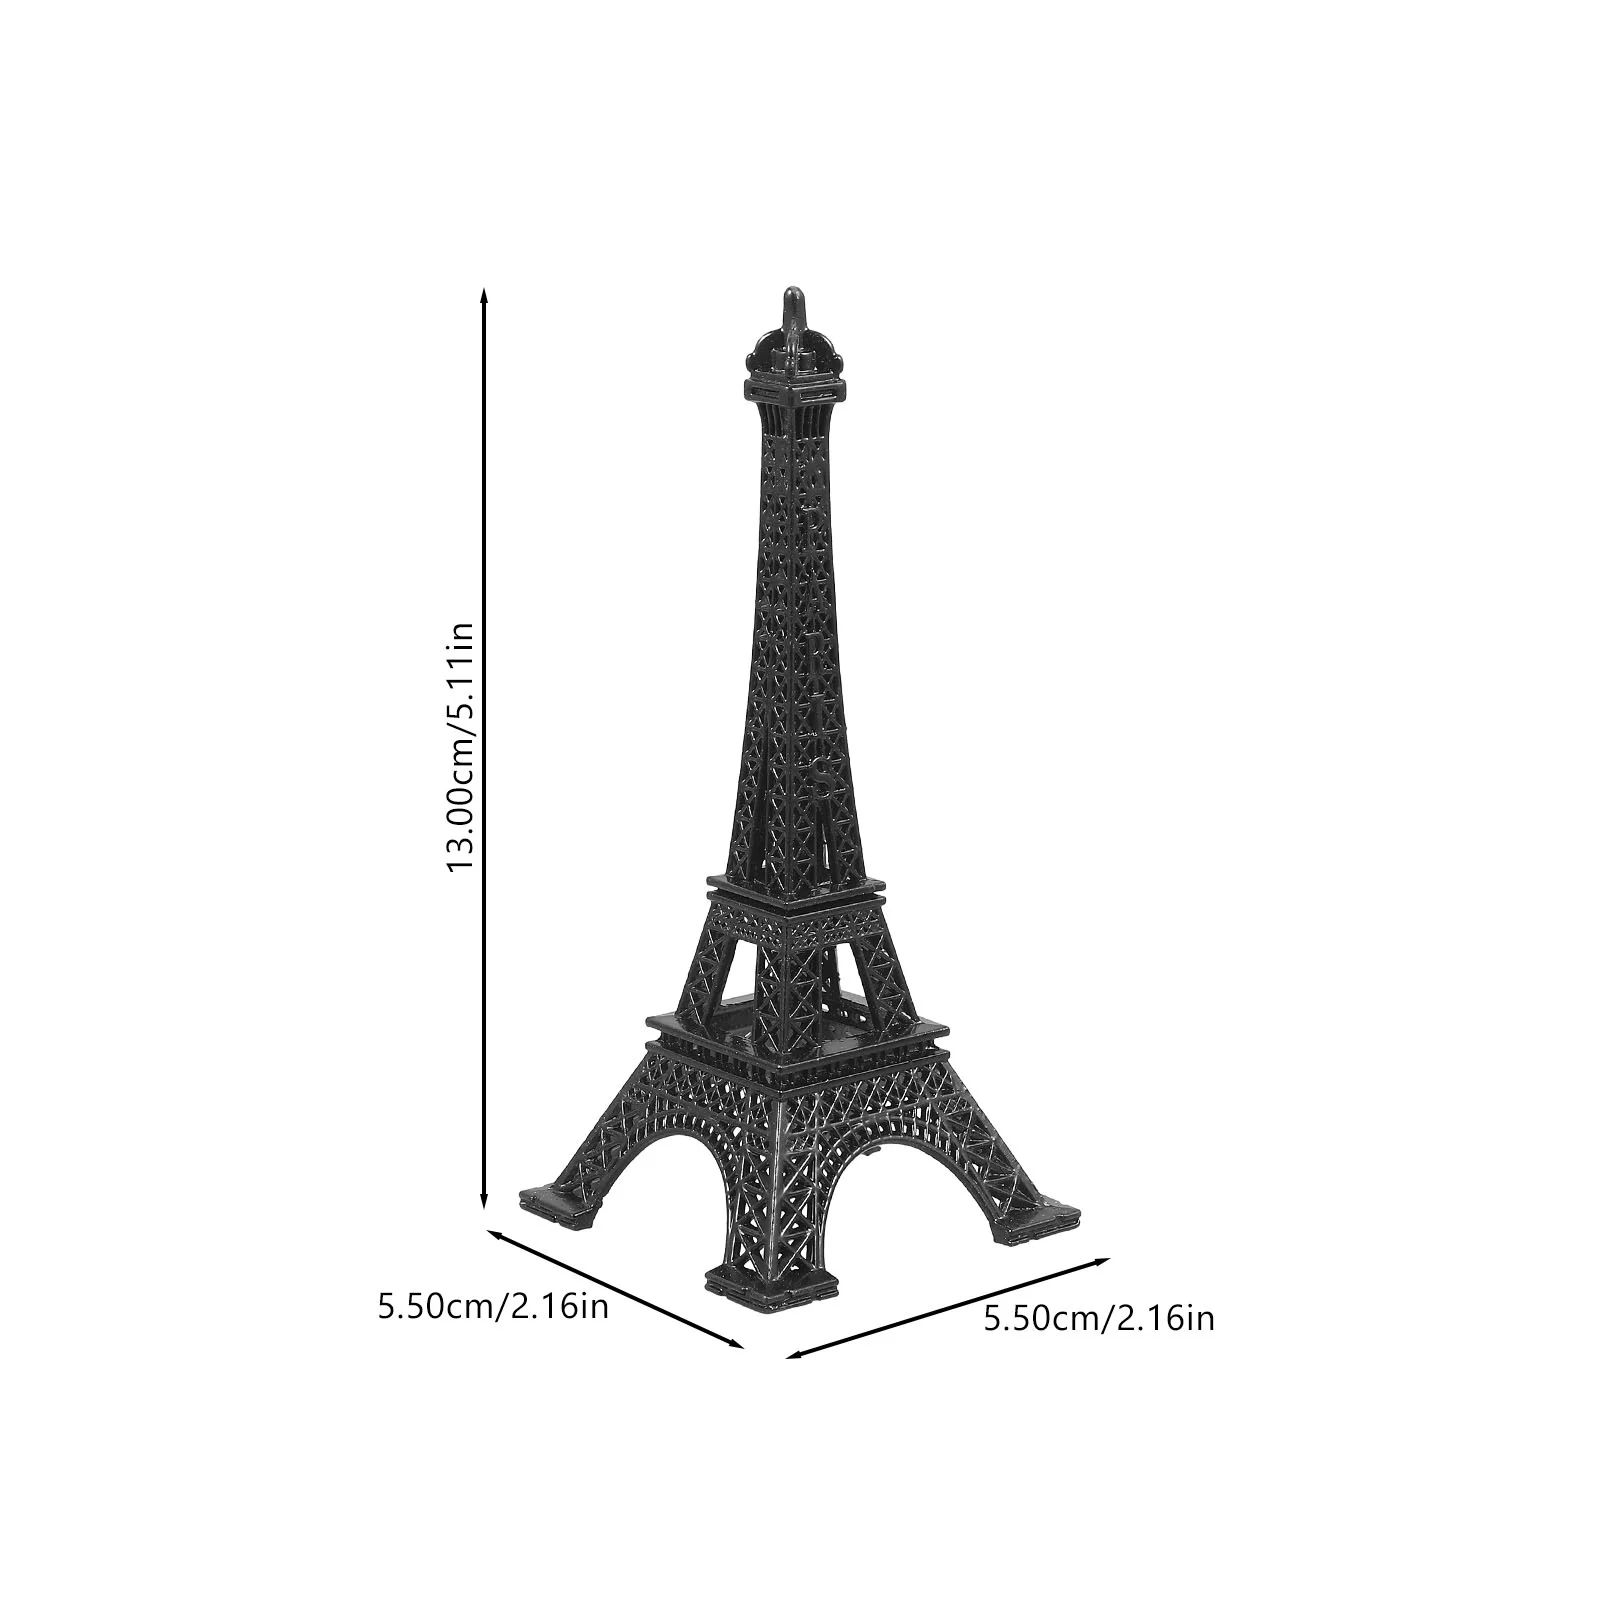 Украшение модели Эйфелевой башни Цинковый сплав Опорный бар Эйфелевой башни Украшение Эйфелевой башни 2